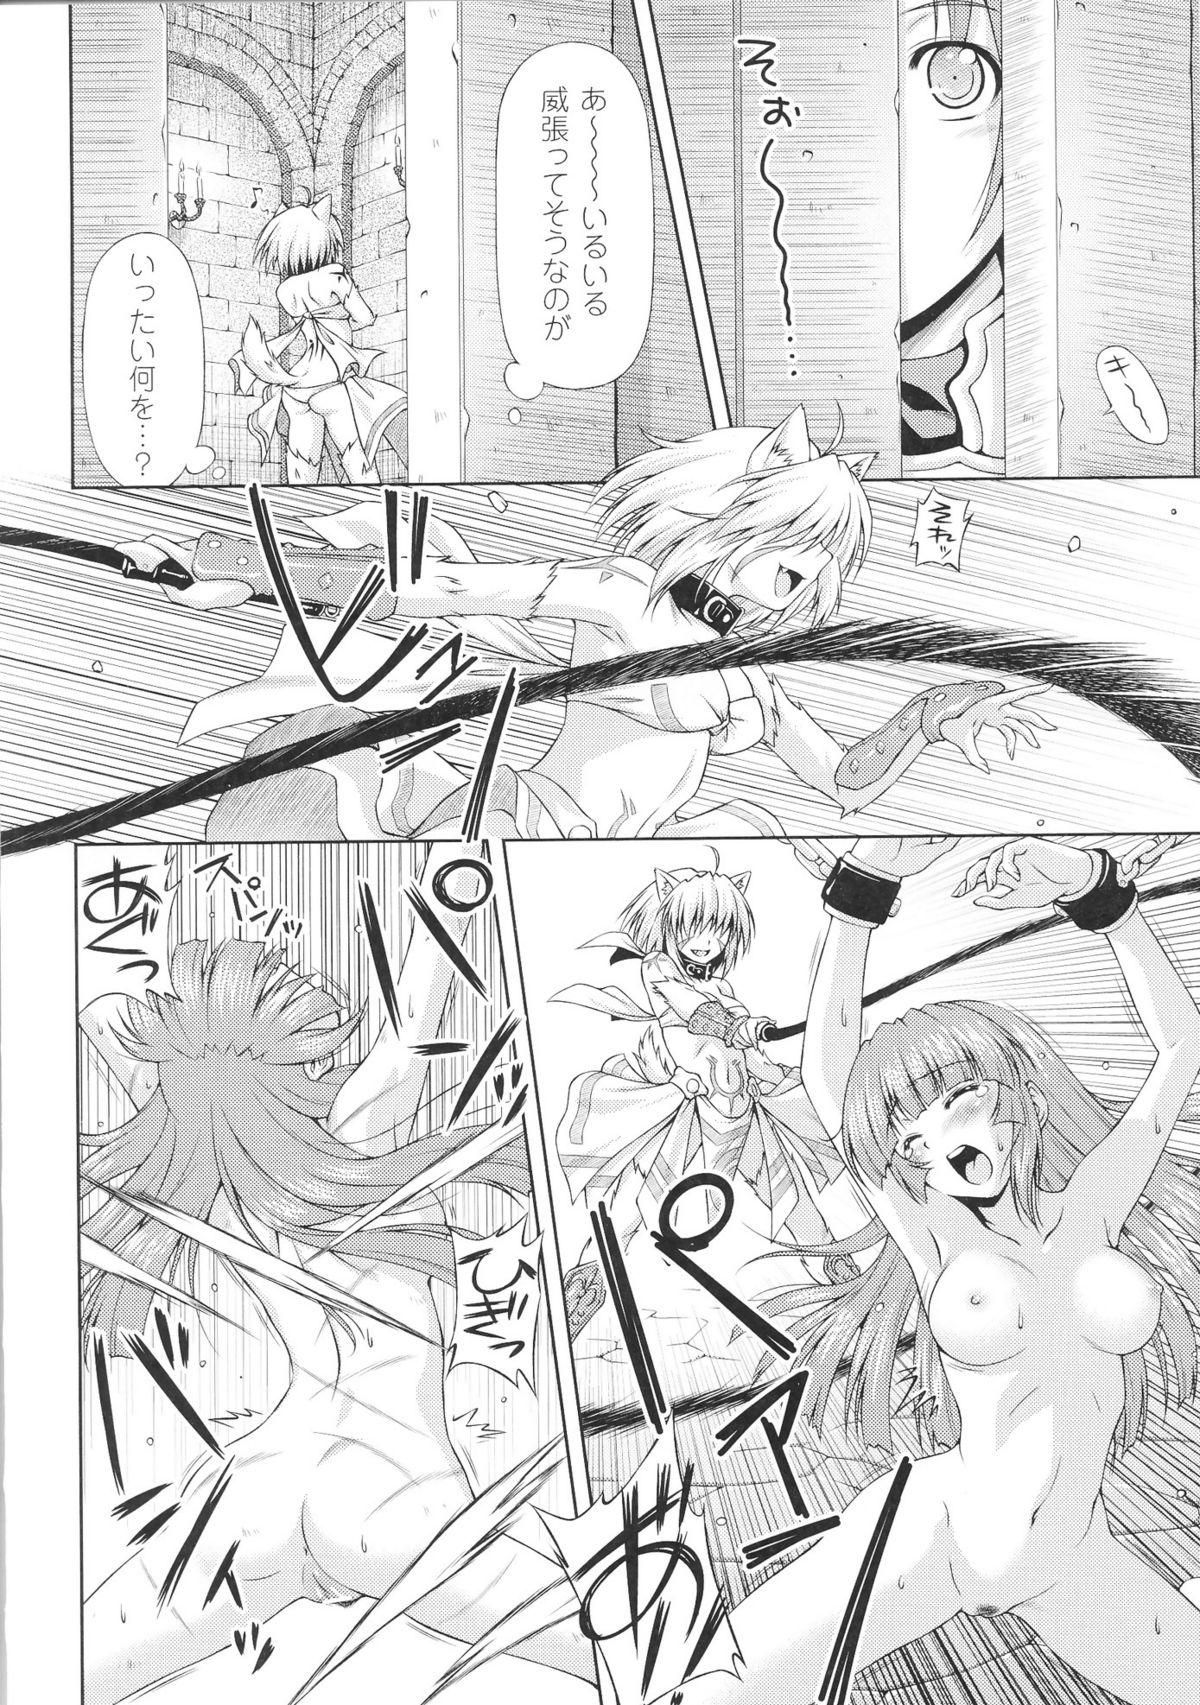 Short Toushin Engi Vol. 5 - Lightning warrior raidy Milk - Page 12